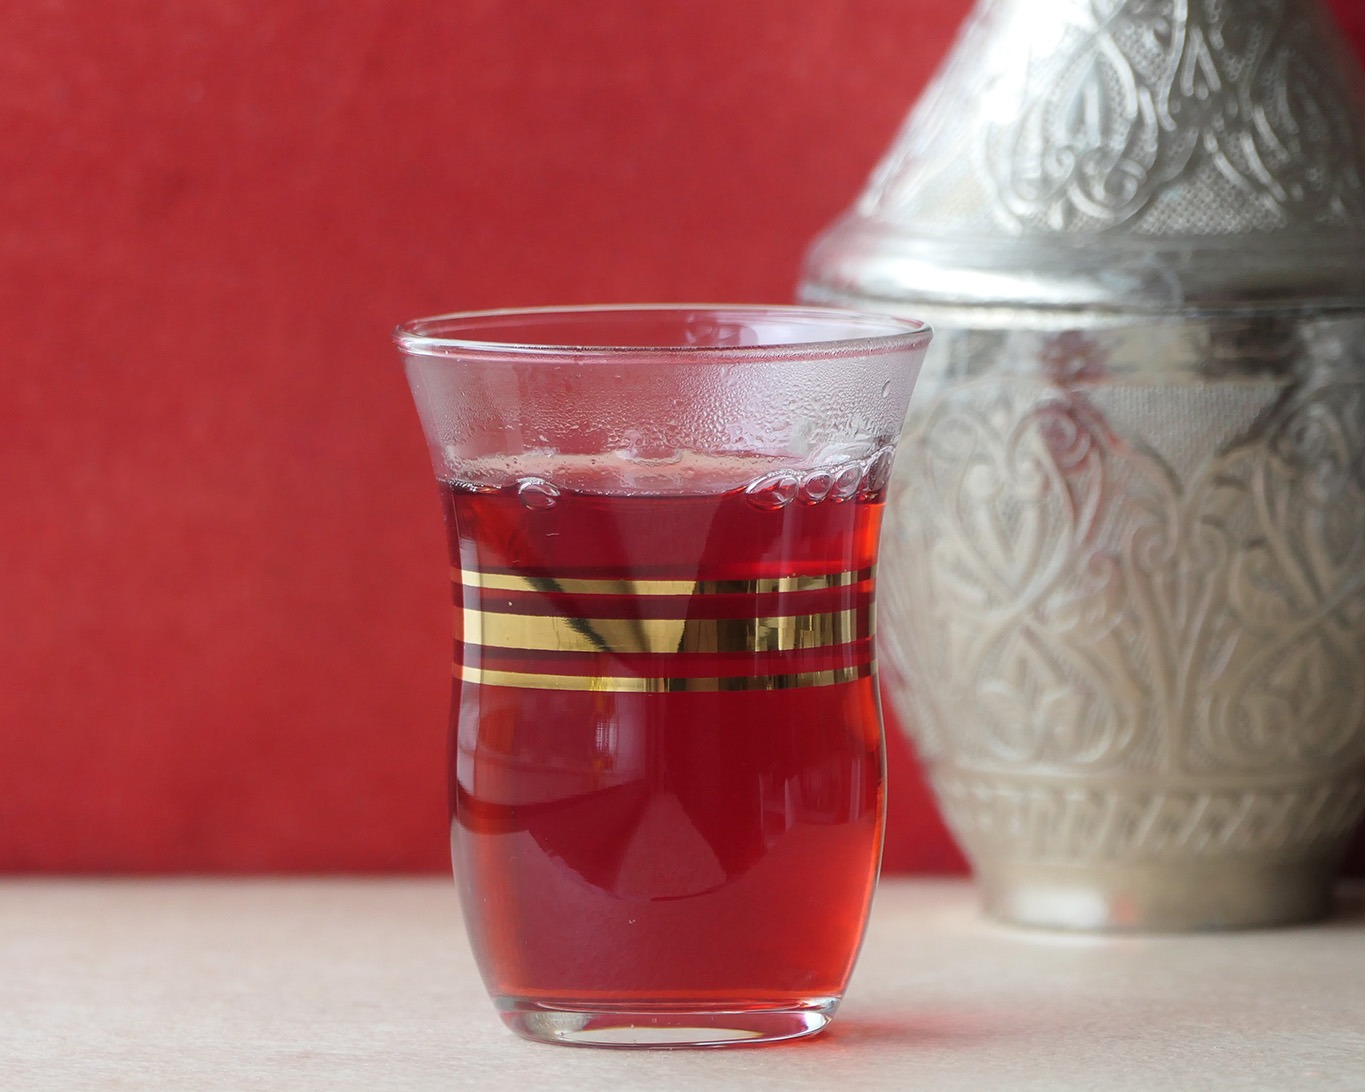 An kalten und an heissen Tagen ist ein Glas Hibiskusblüten-Tee eine köstliches Getränk.